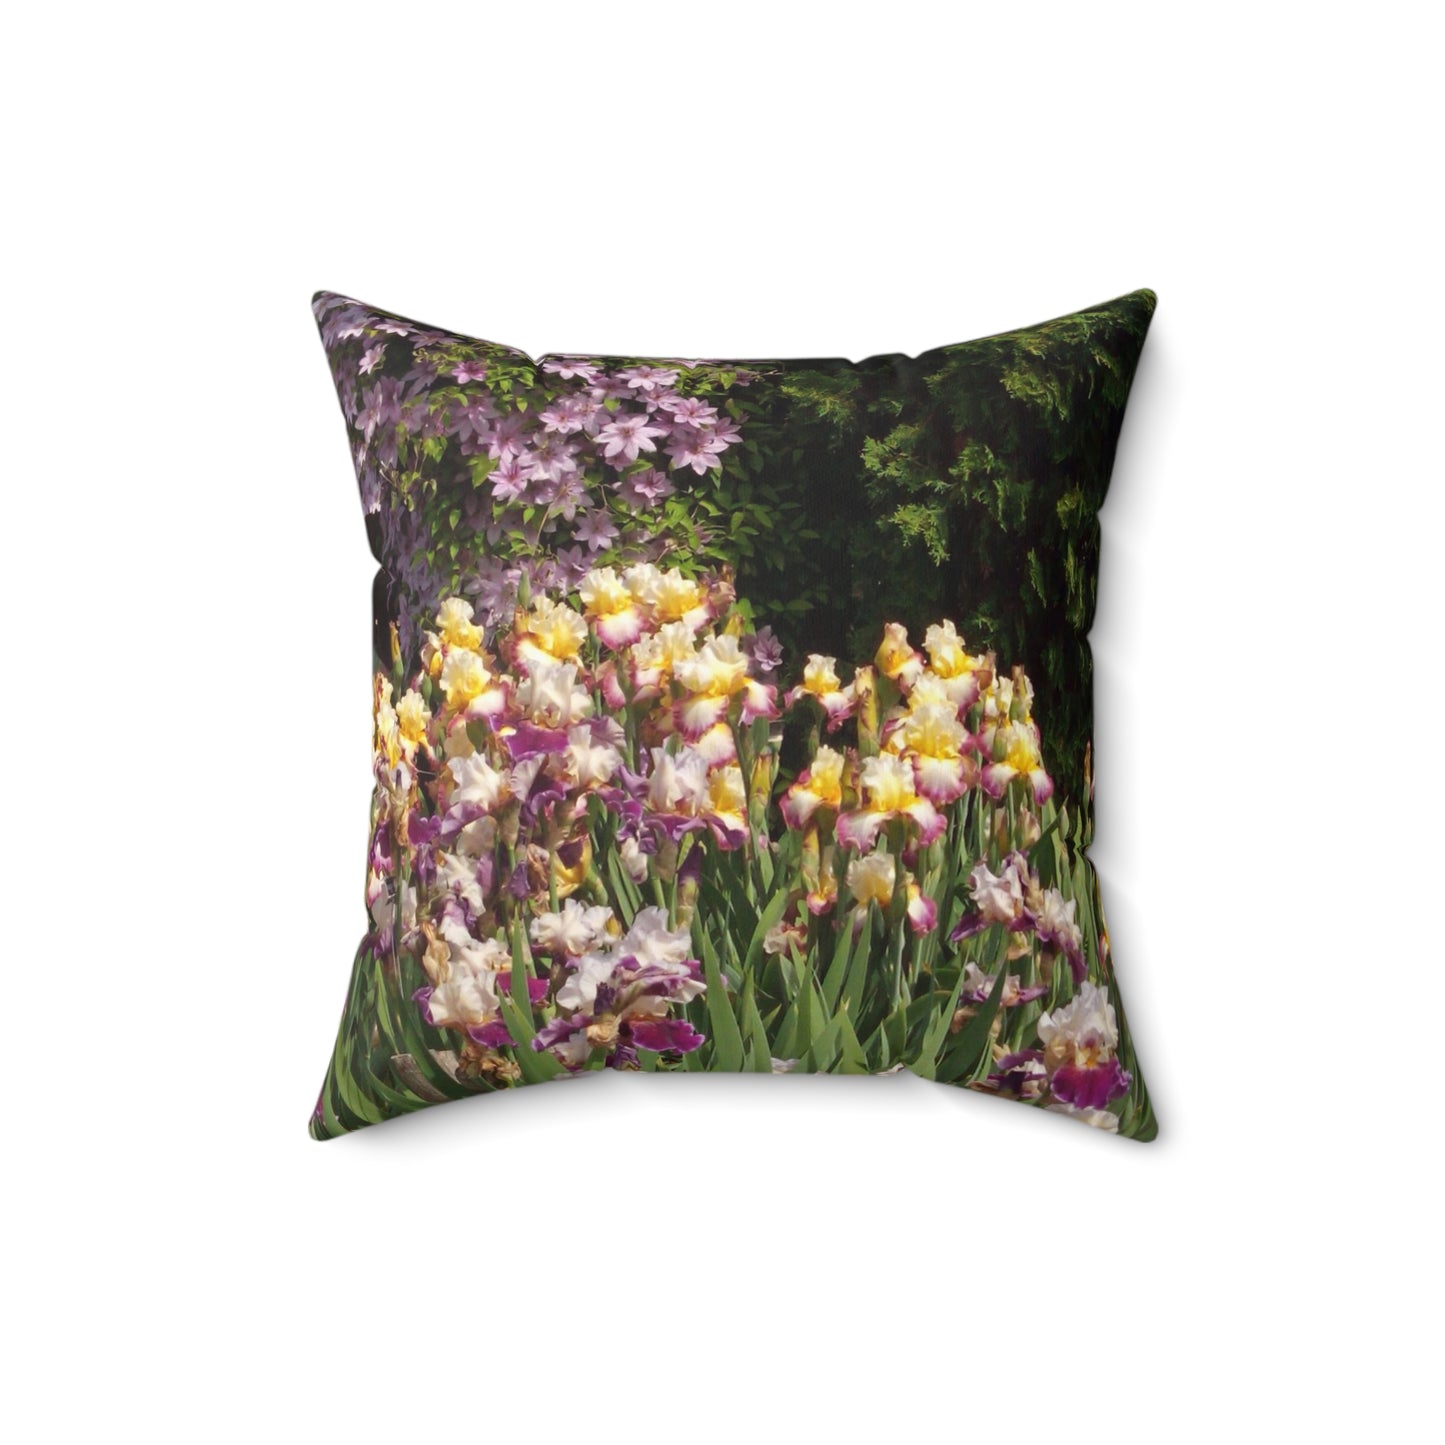 Sunny Iris Garden Spun Polyester Square Pillow